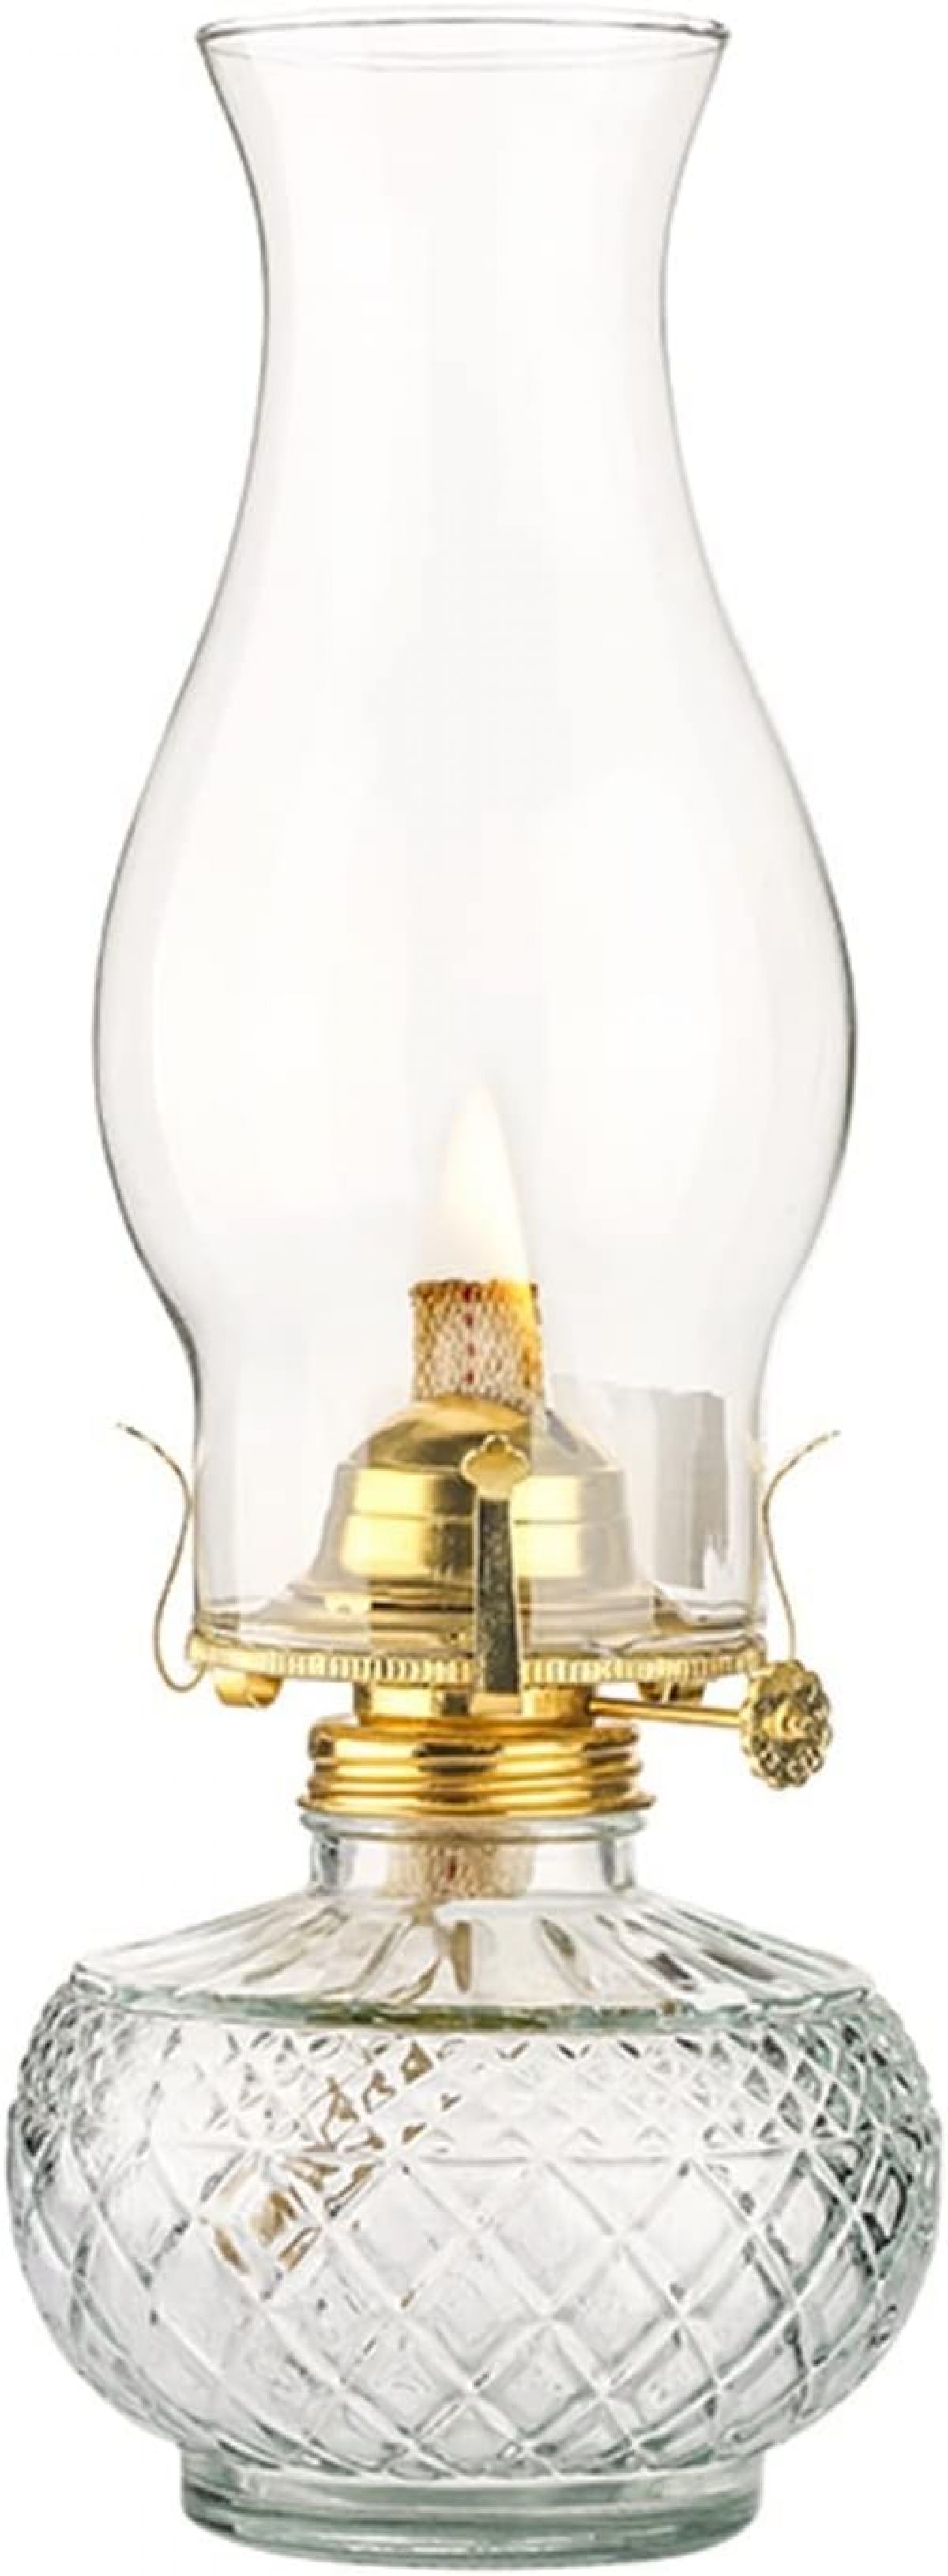 Керосиновая лампа Amanigo